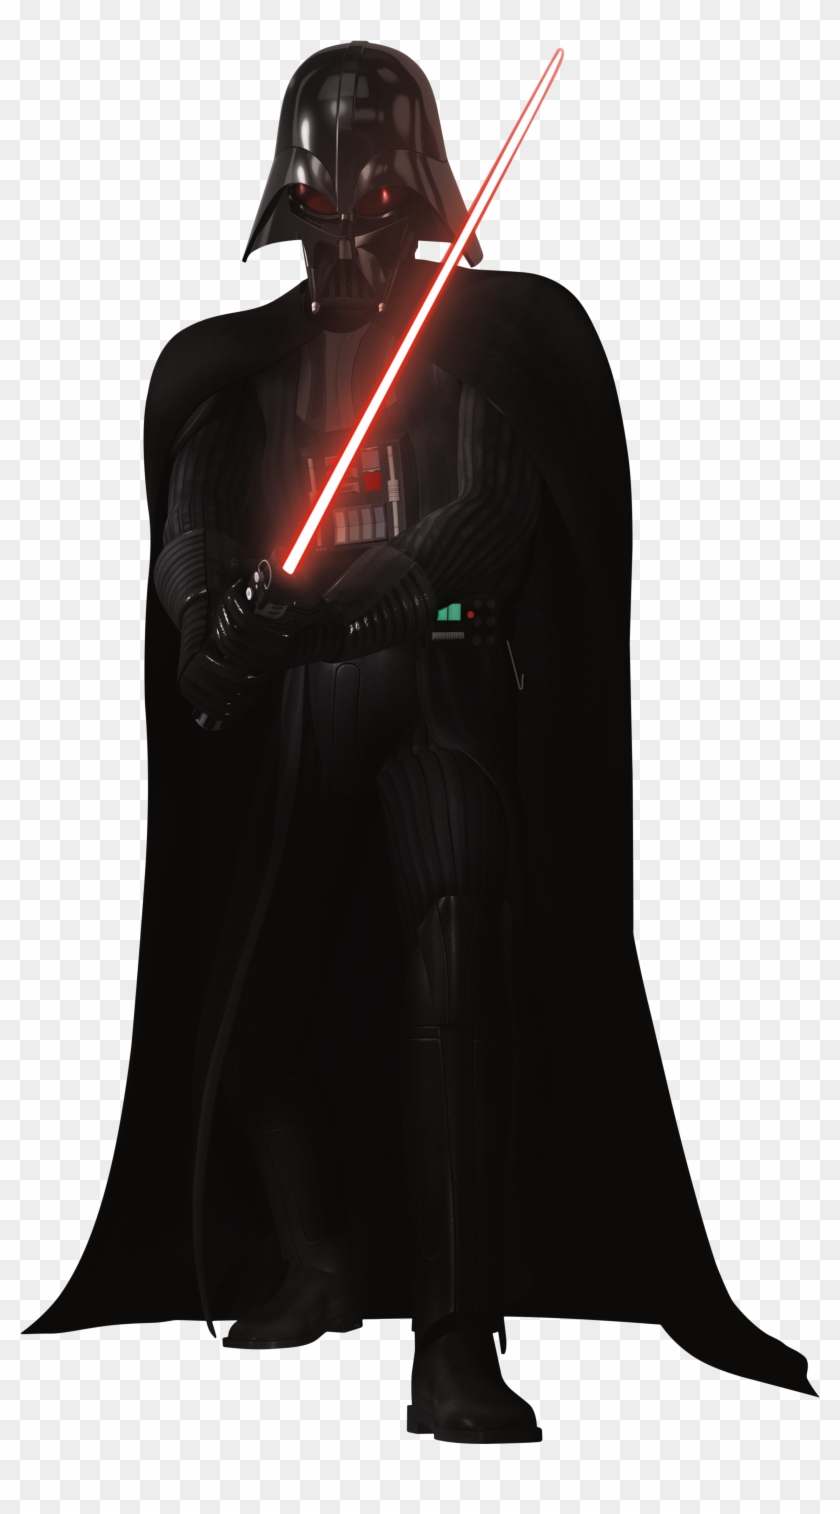 Darth Vader Png - Star Wars Rebels Darth Vader Png Clipart